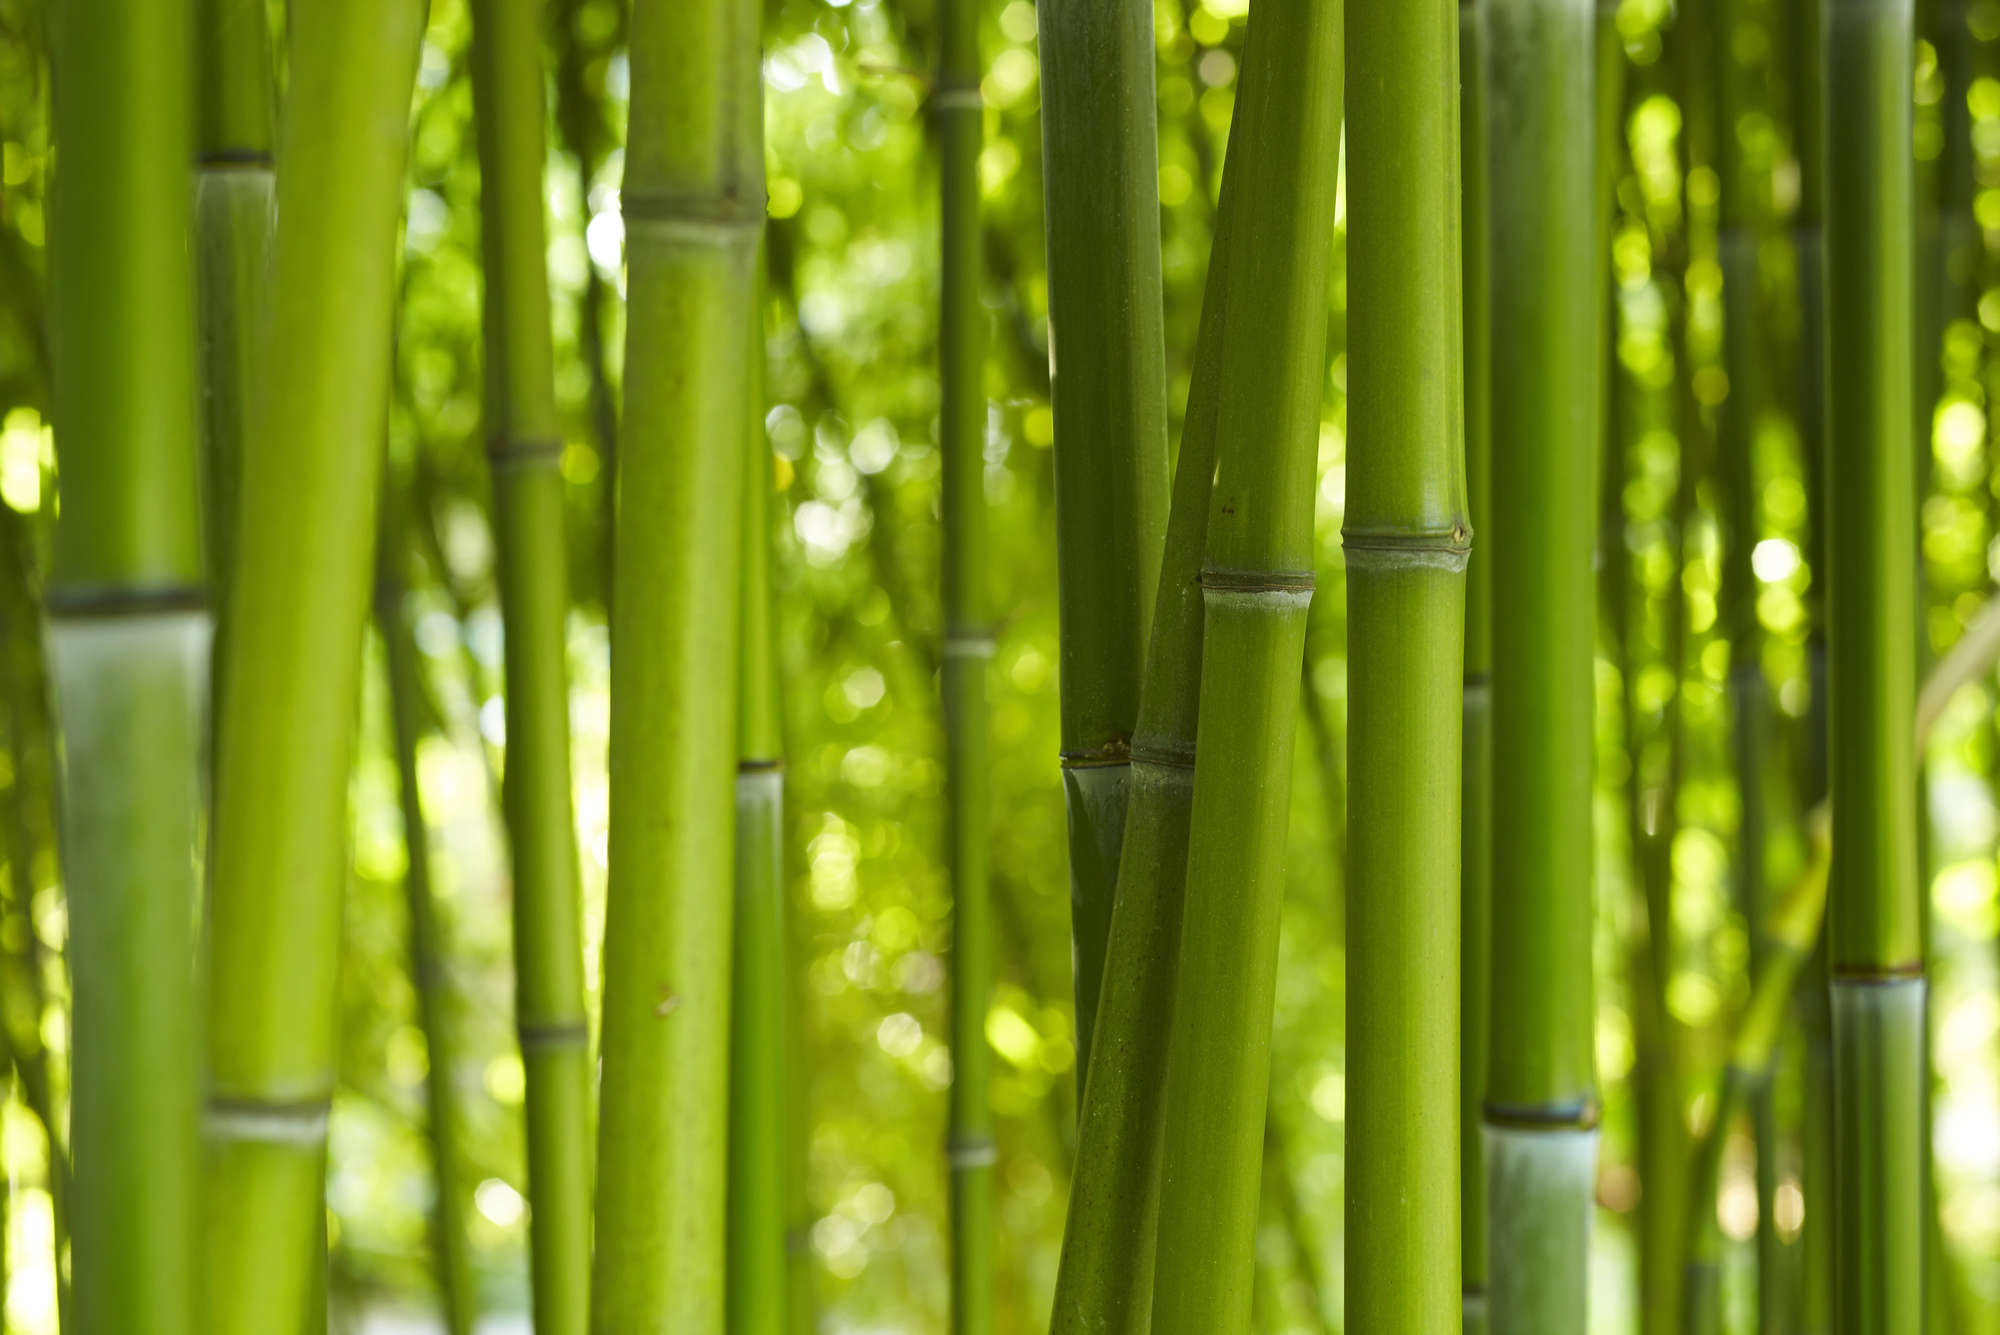             papiers peints à impression numérique bambou en vert - Premium intissé lisse
        